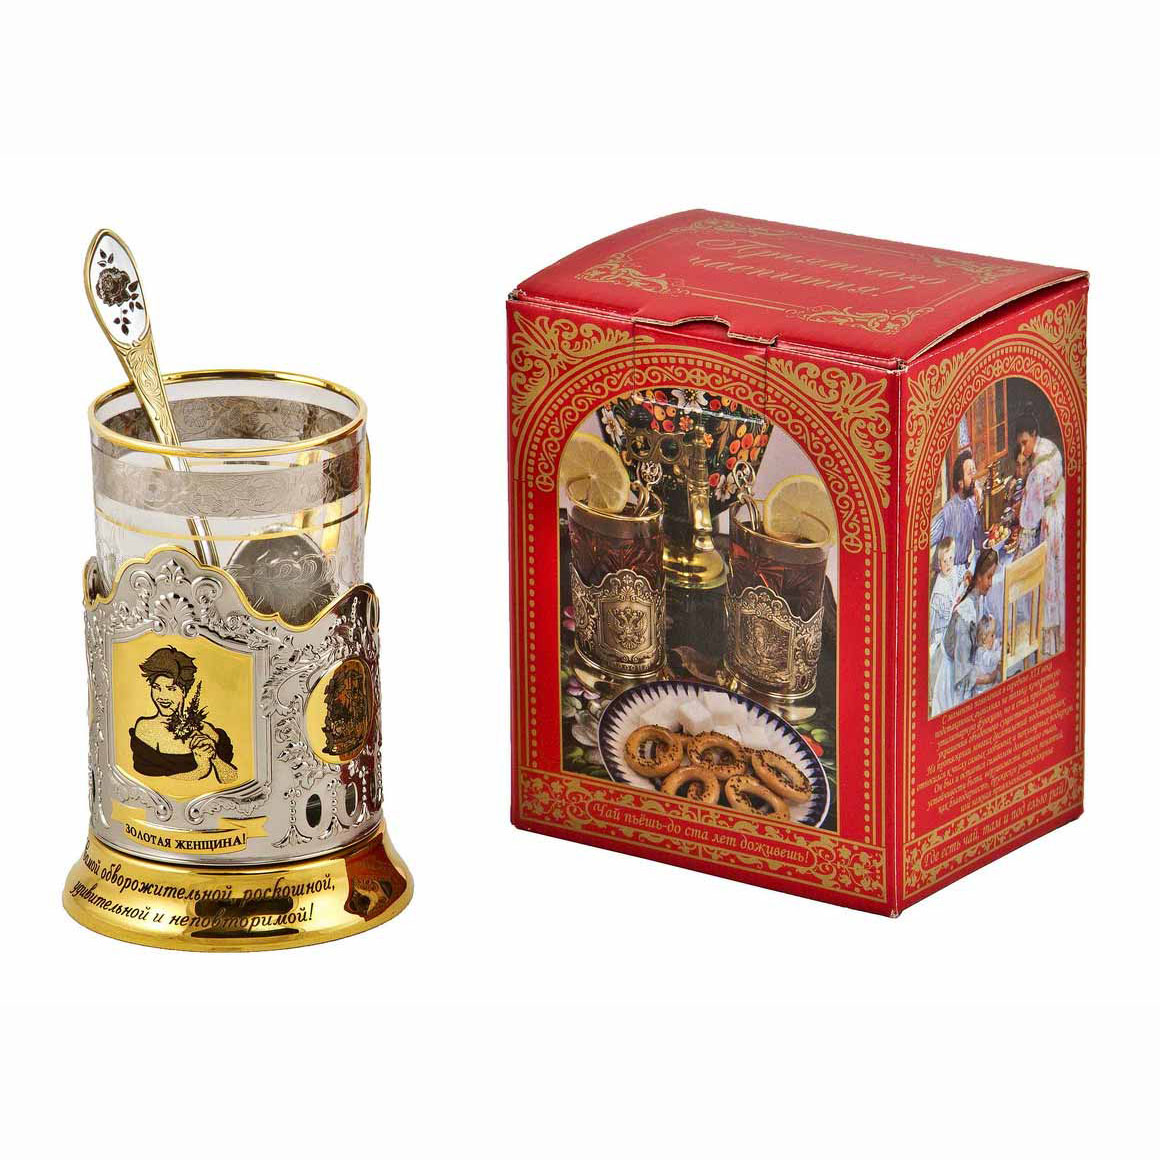 Набор для чая "Золотая женщина!" в/з(3 пр.) карт.коробка, стекл. стакан, гравир.,ложка нерж. зол. грав.